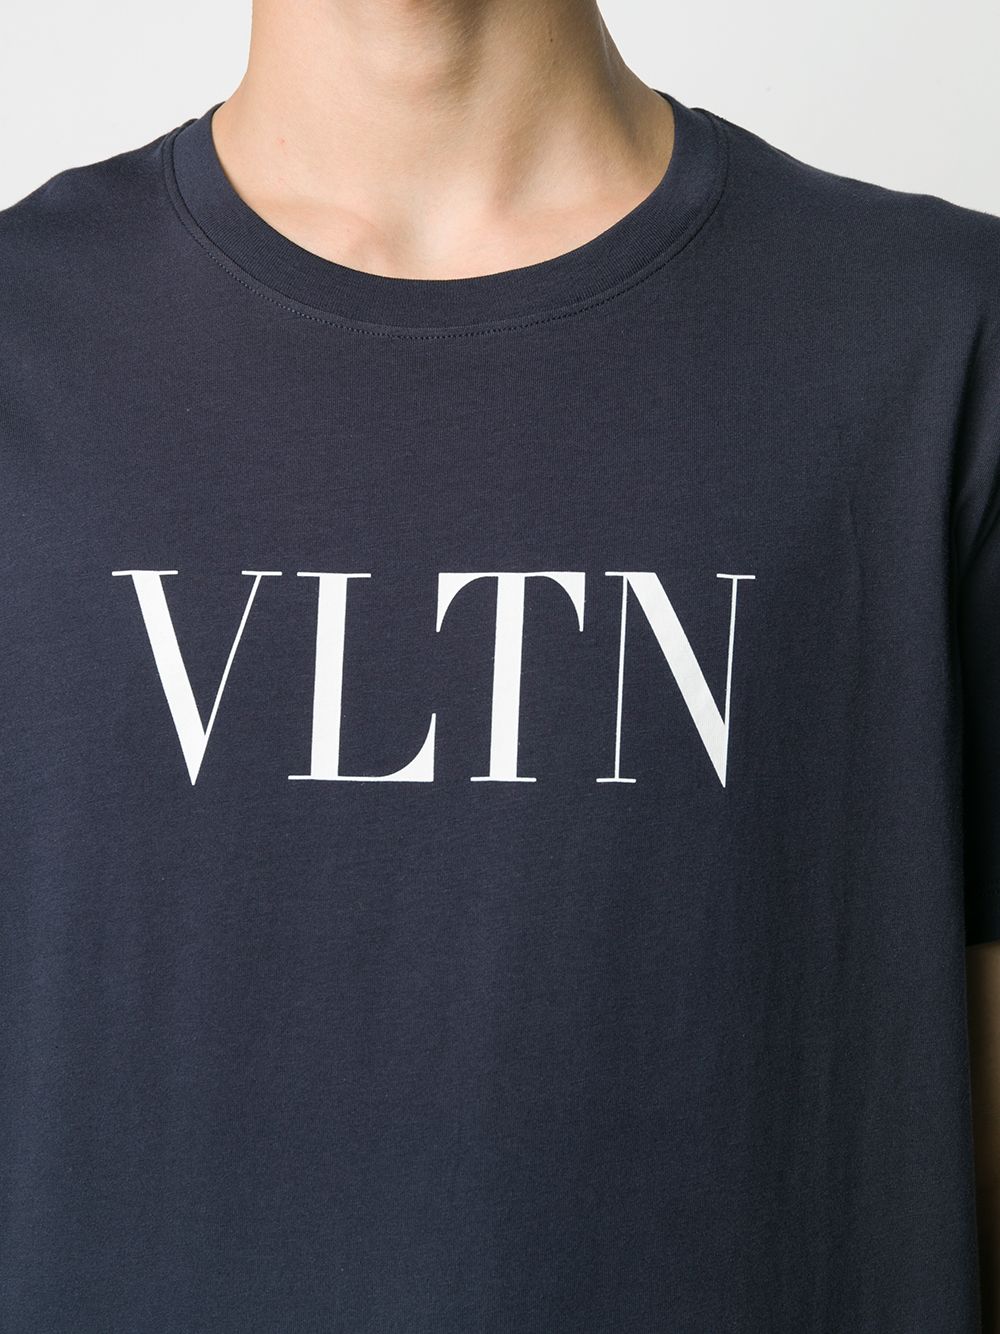 фото Valentino футболка с логотипом VLTN